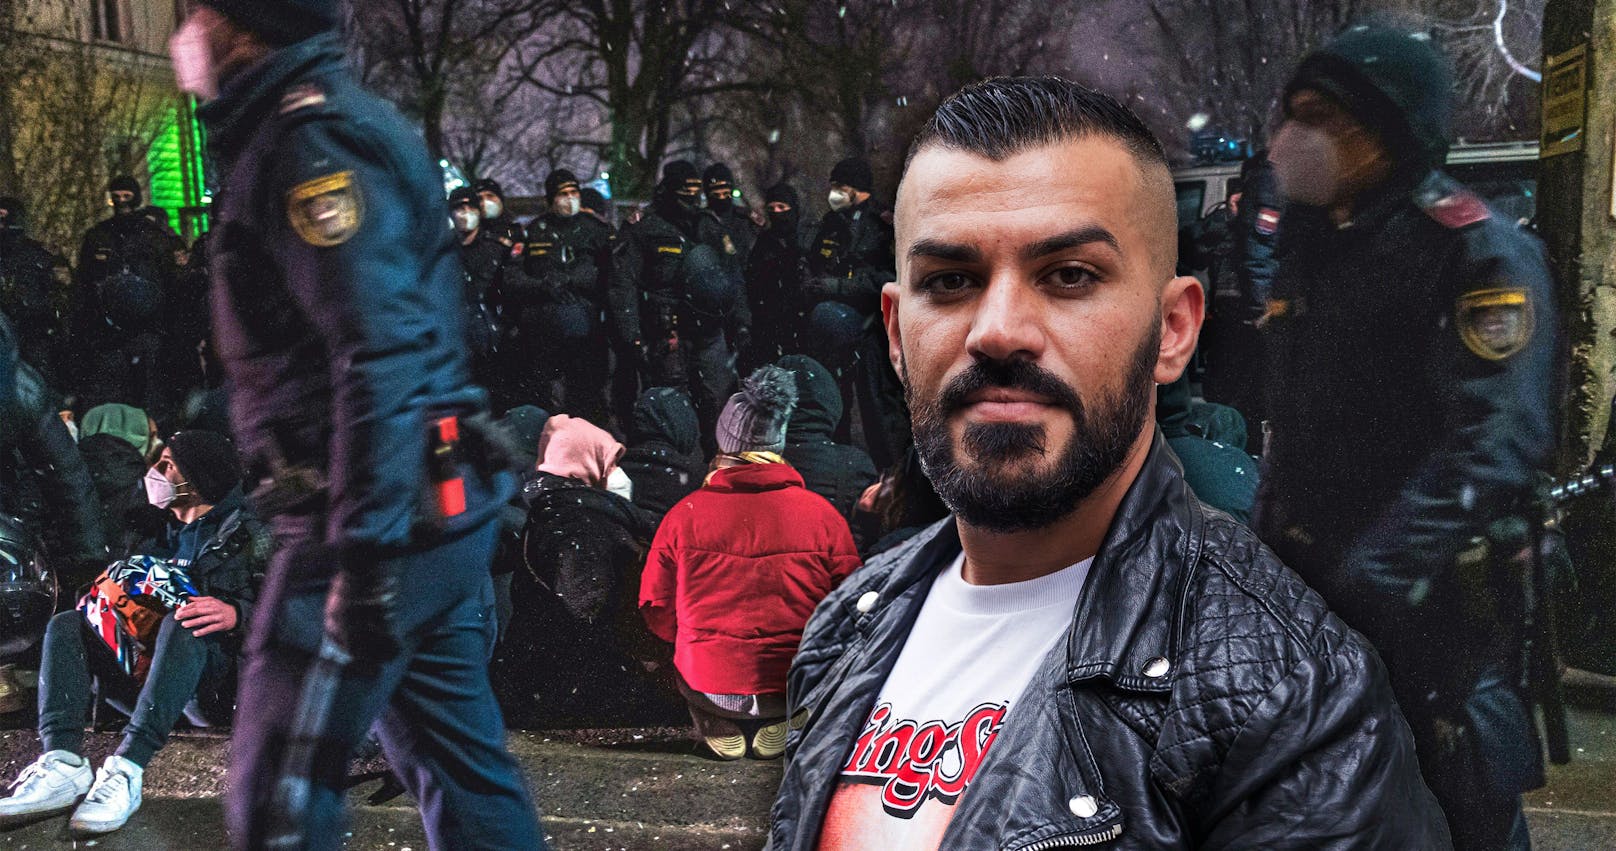 Nazar nach Abschiebung: "Polizei besteht aus Rassisten"